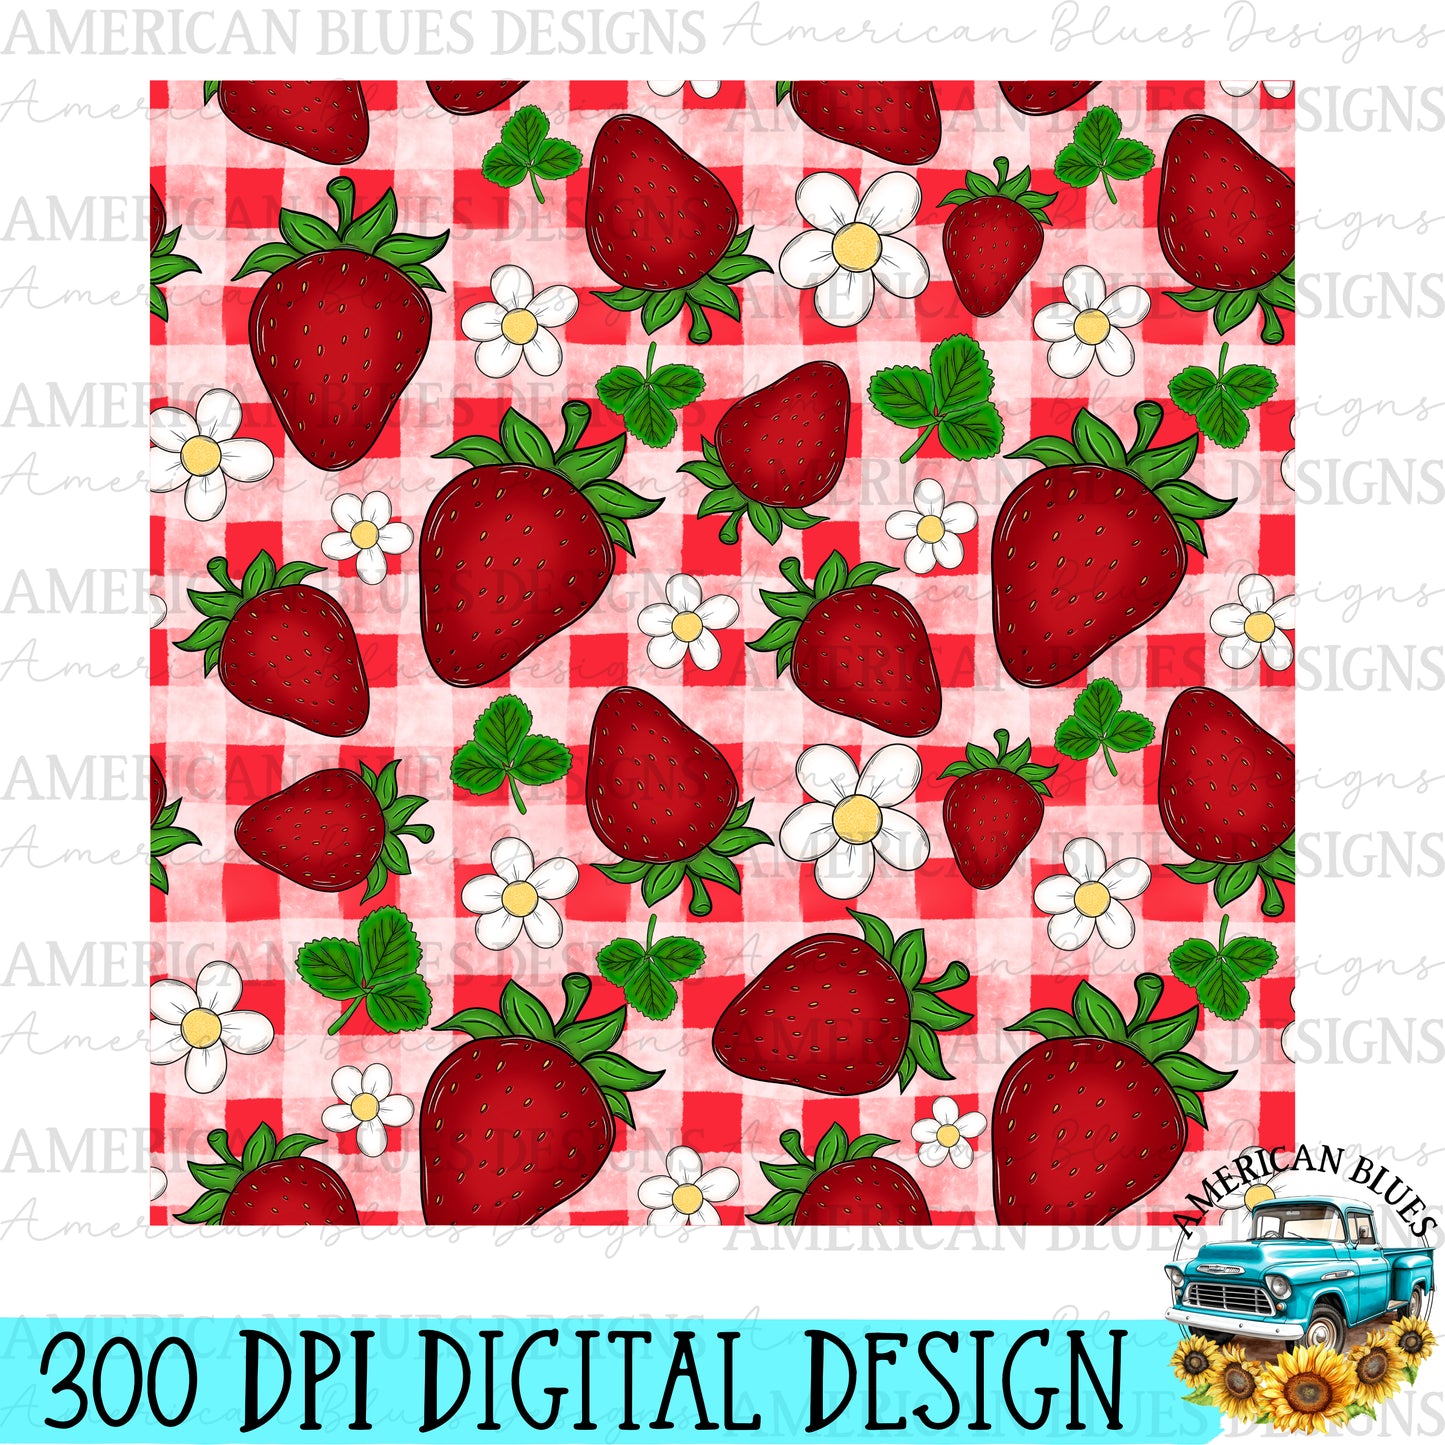 Strawberries & Flowers seamless pattern bundle